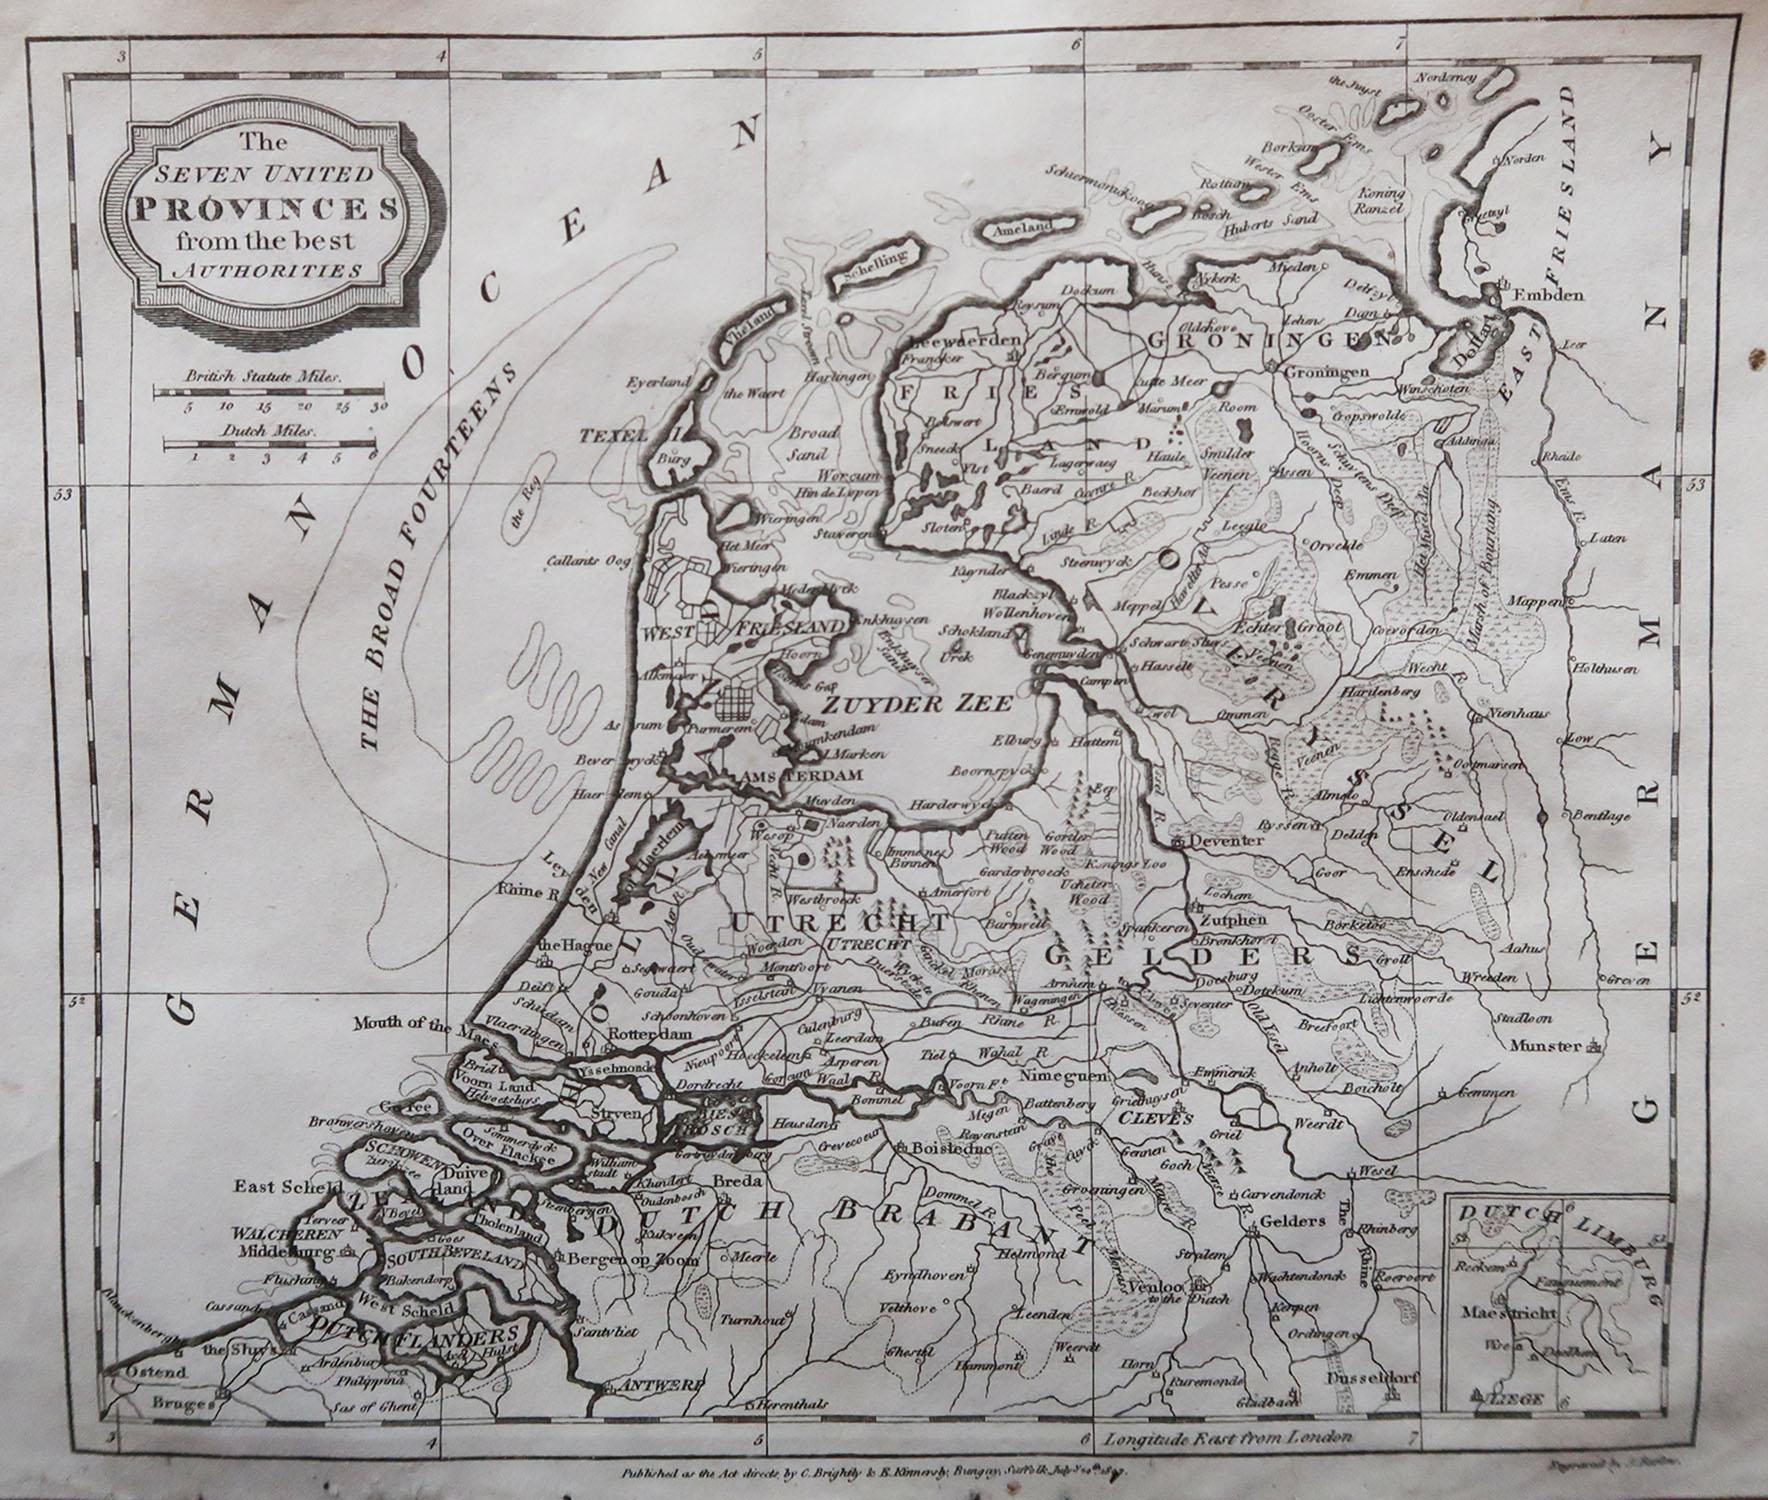 Grande carte des Pays-Bas

Gravure sur cuivre de Barlow

Publié par Brightly & Kinnersly, Bungay, Suffolk. 

Daté de 1807

Non encadré.